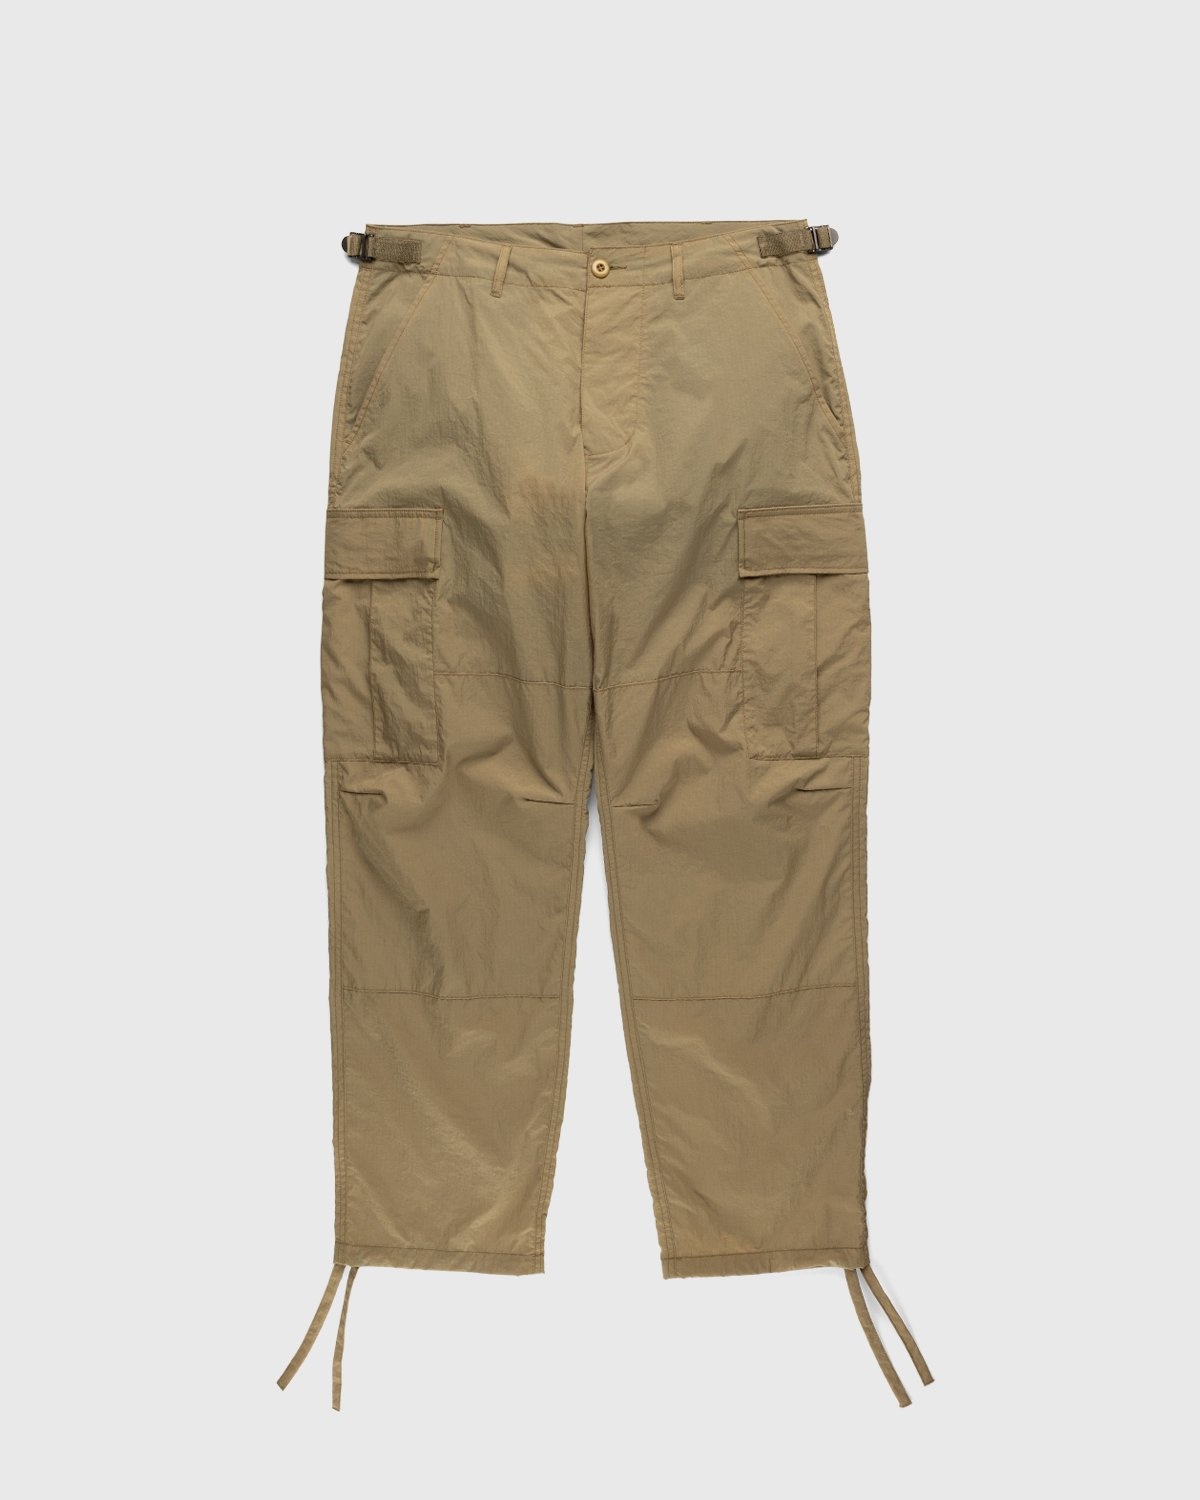 Highsnobiety – Water-Resistant Ripstop Cargo Pants Beige - Cargo Pants - Beige - Image 1